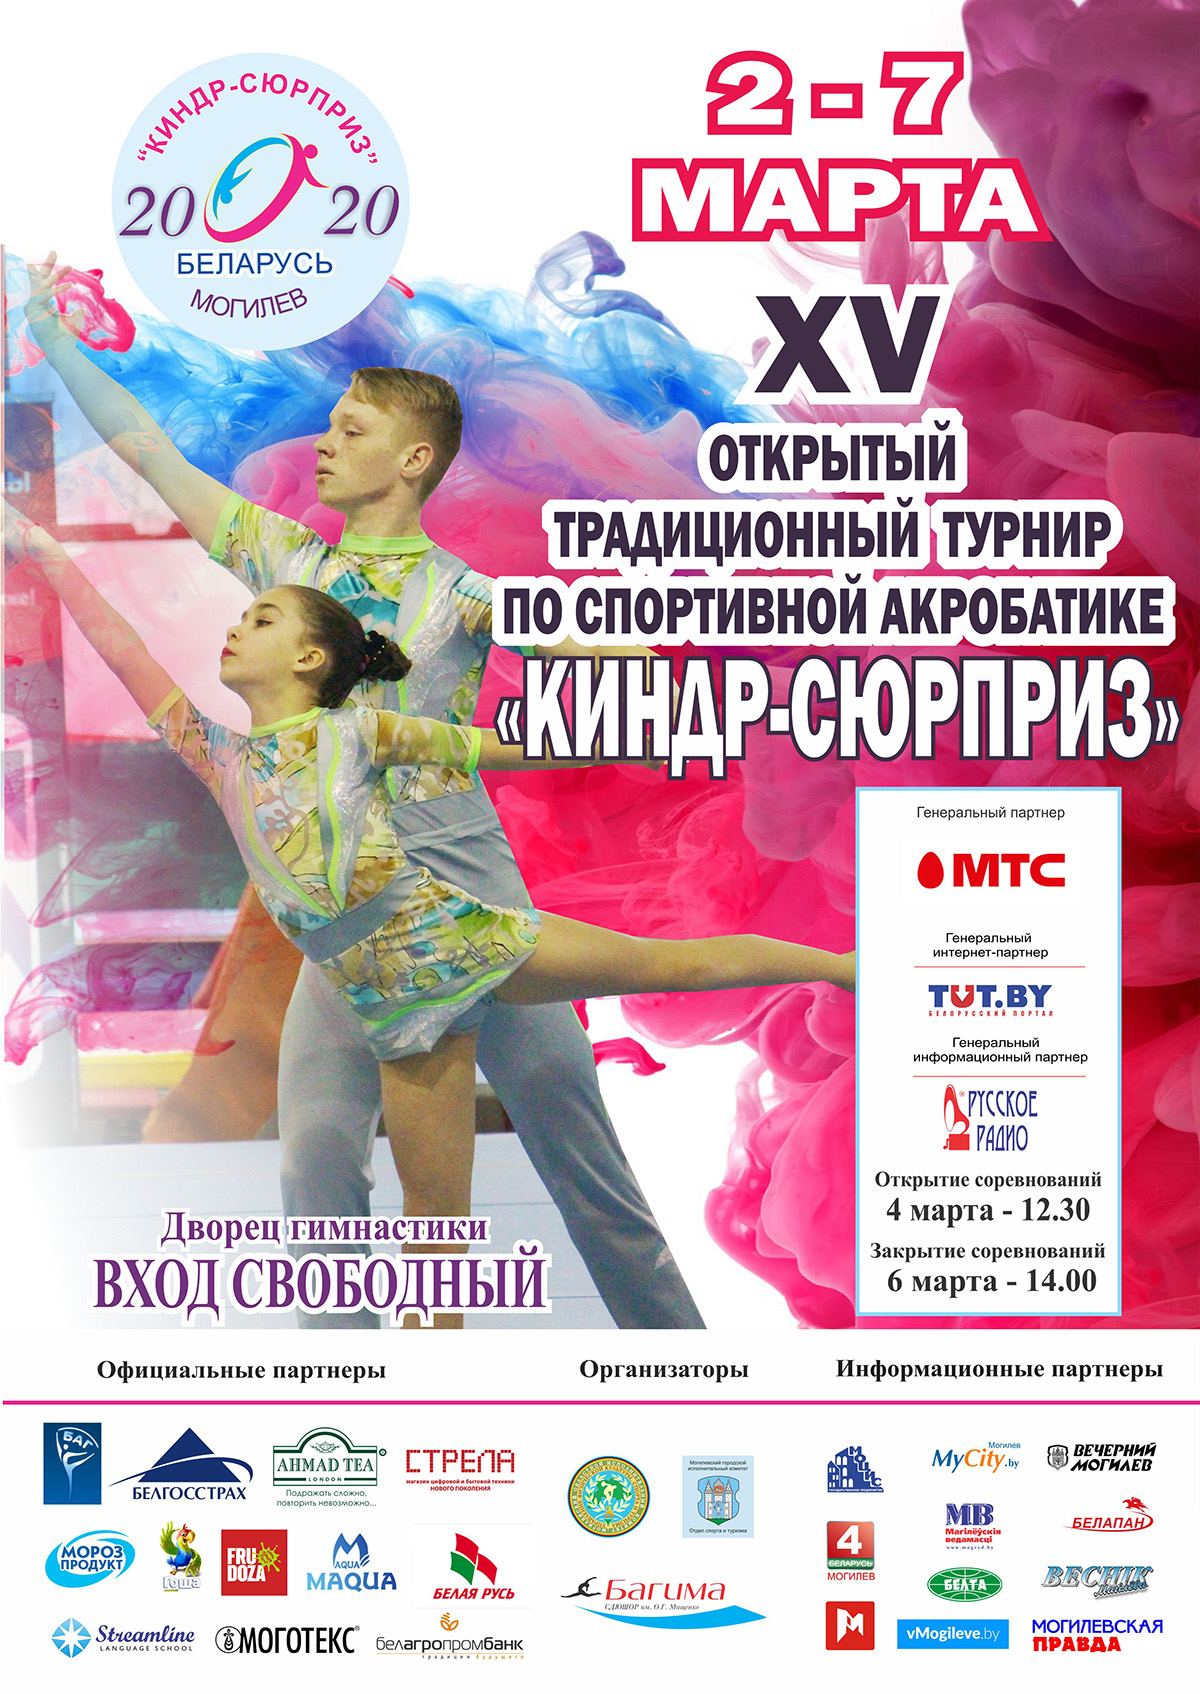 XV открытый традиционный турнир по спортивной акробатике «Киндр-сюрприз» 